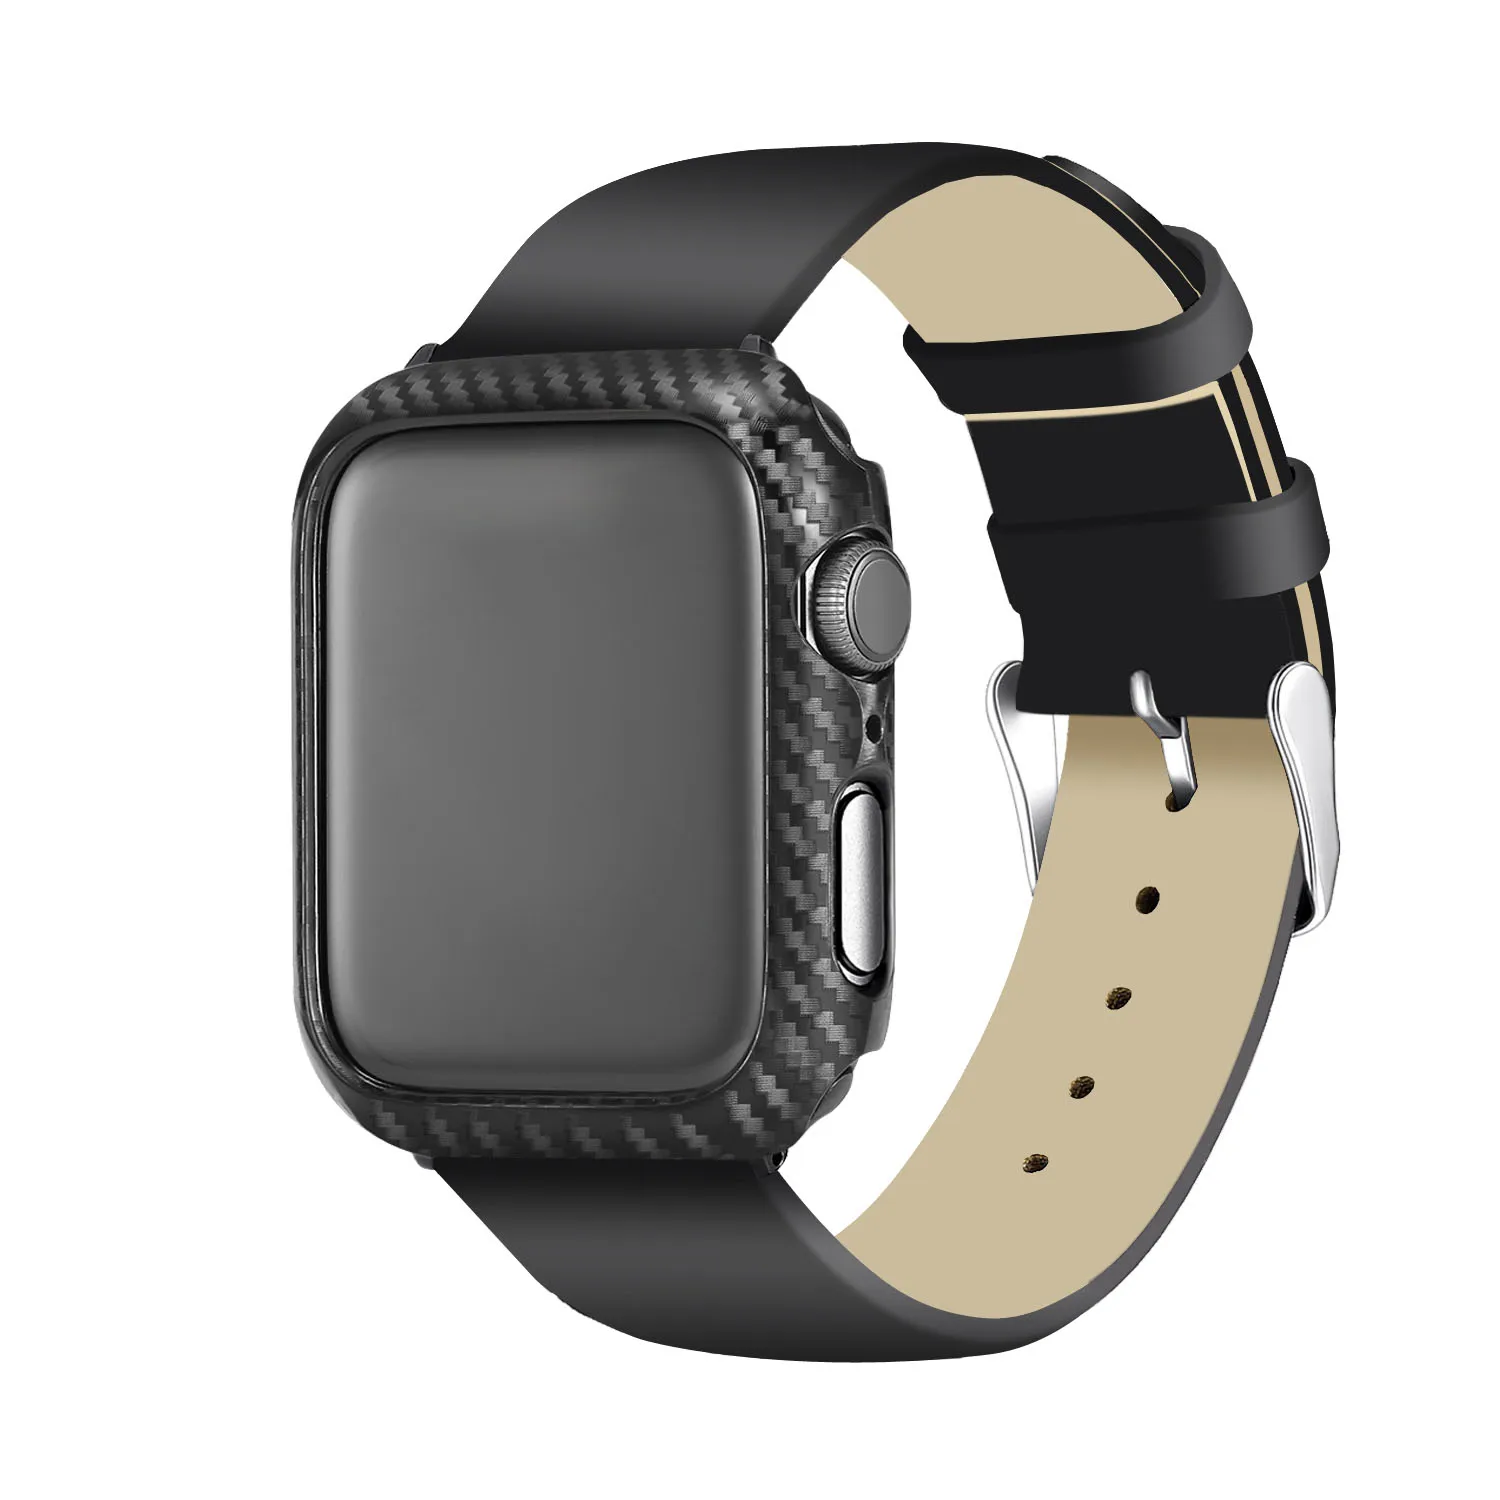 Ультра тонкий чехол из углеродного волокна для Apple Watch 44 мм 40 мм защитная рамка для iWatch серии 5 4 3 2 1 42 мм 38 мм бампер крышка